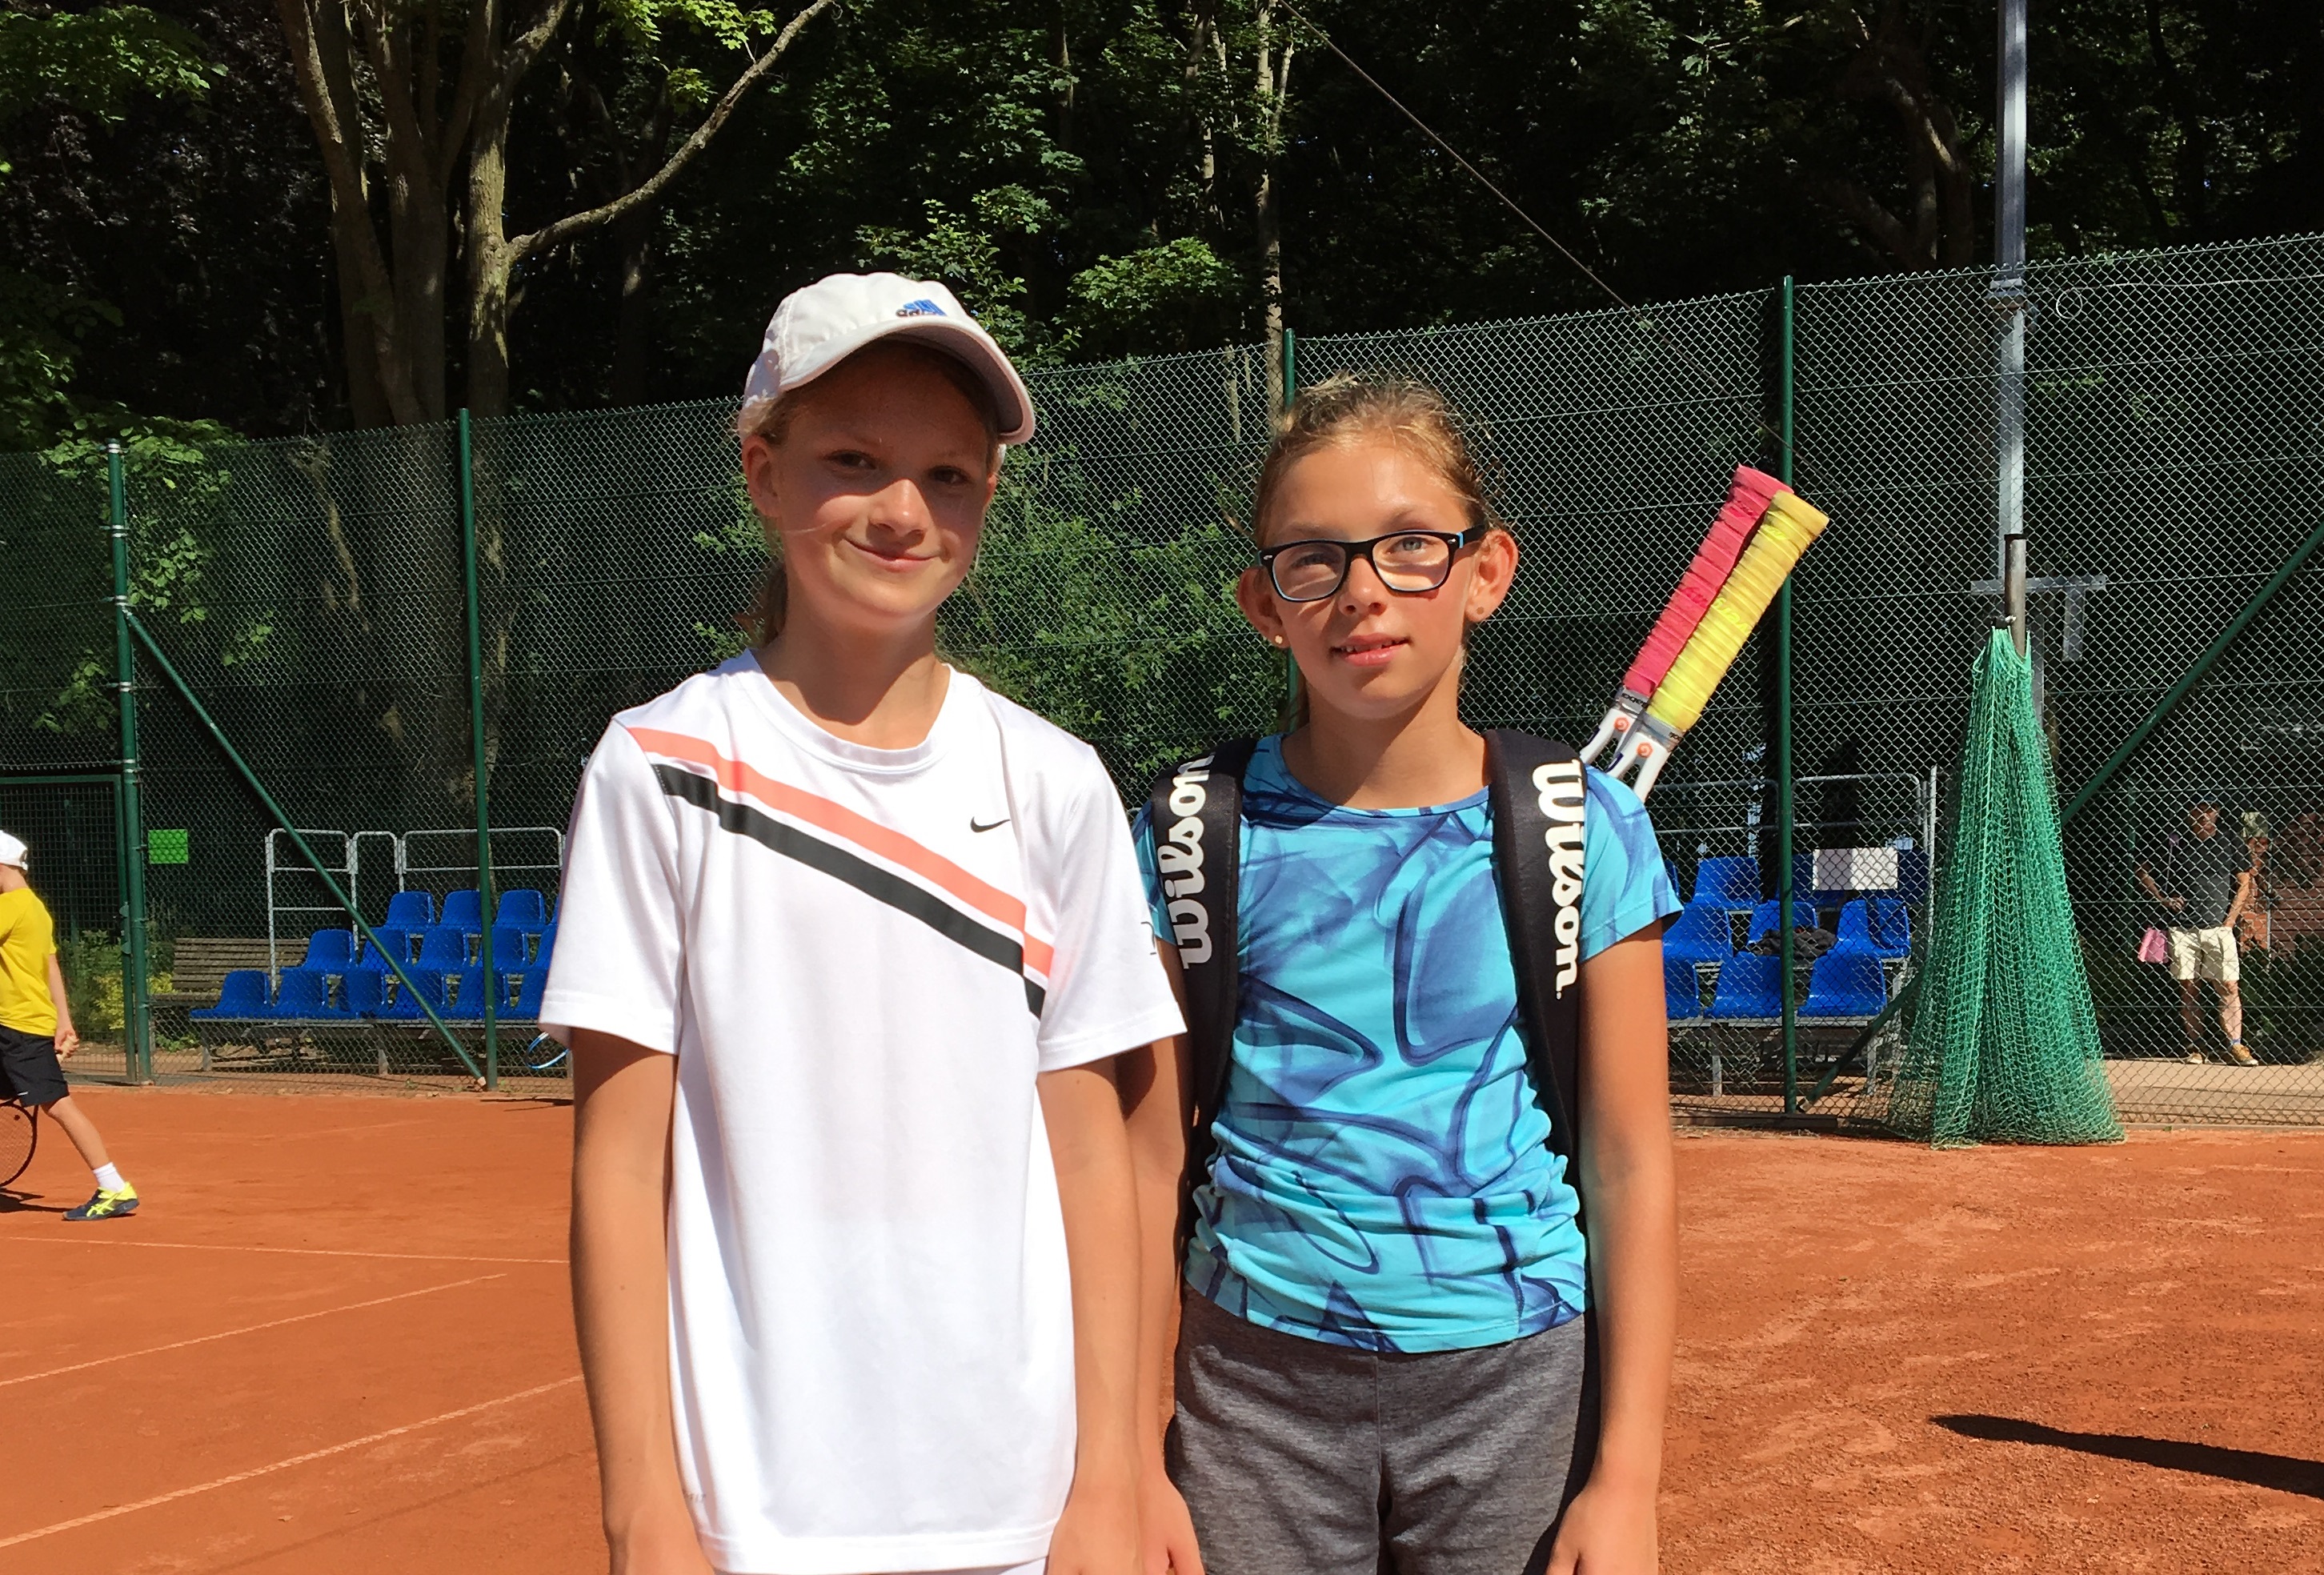 Zawodniczka Top Tenis na zawodach w Szczecinie